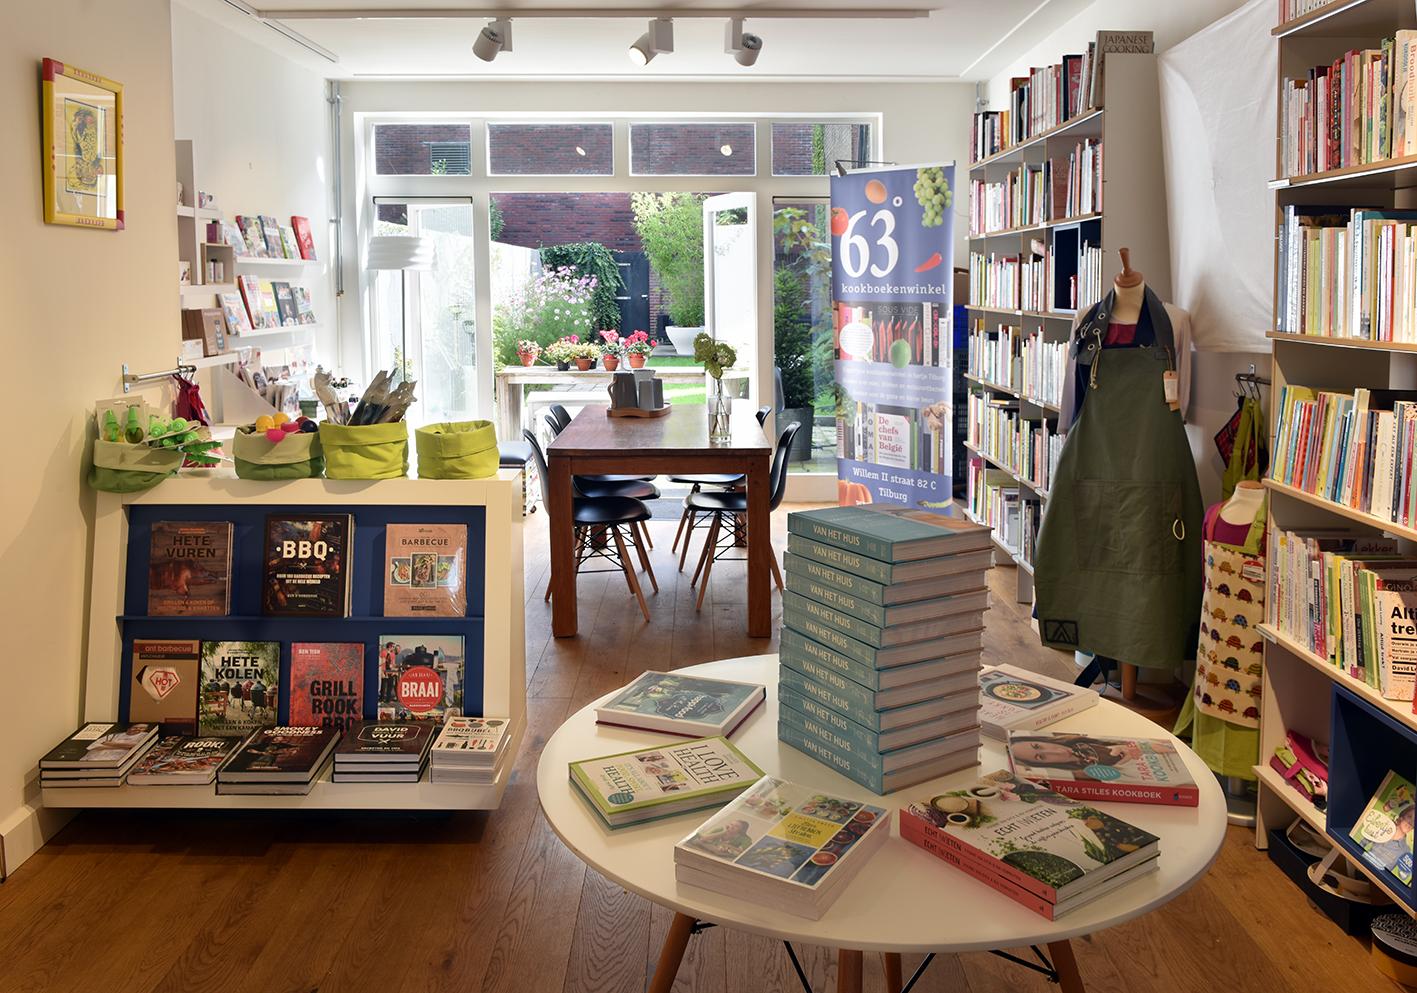 Foto 63graden kookboeken in Tilburg, Einkaufen, Hobby & freizeit - #1